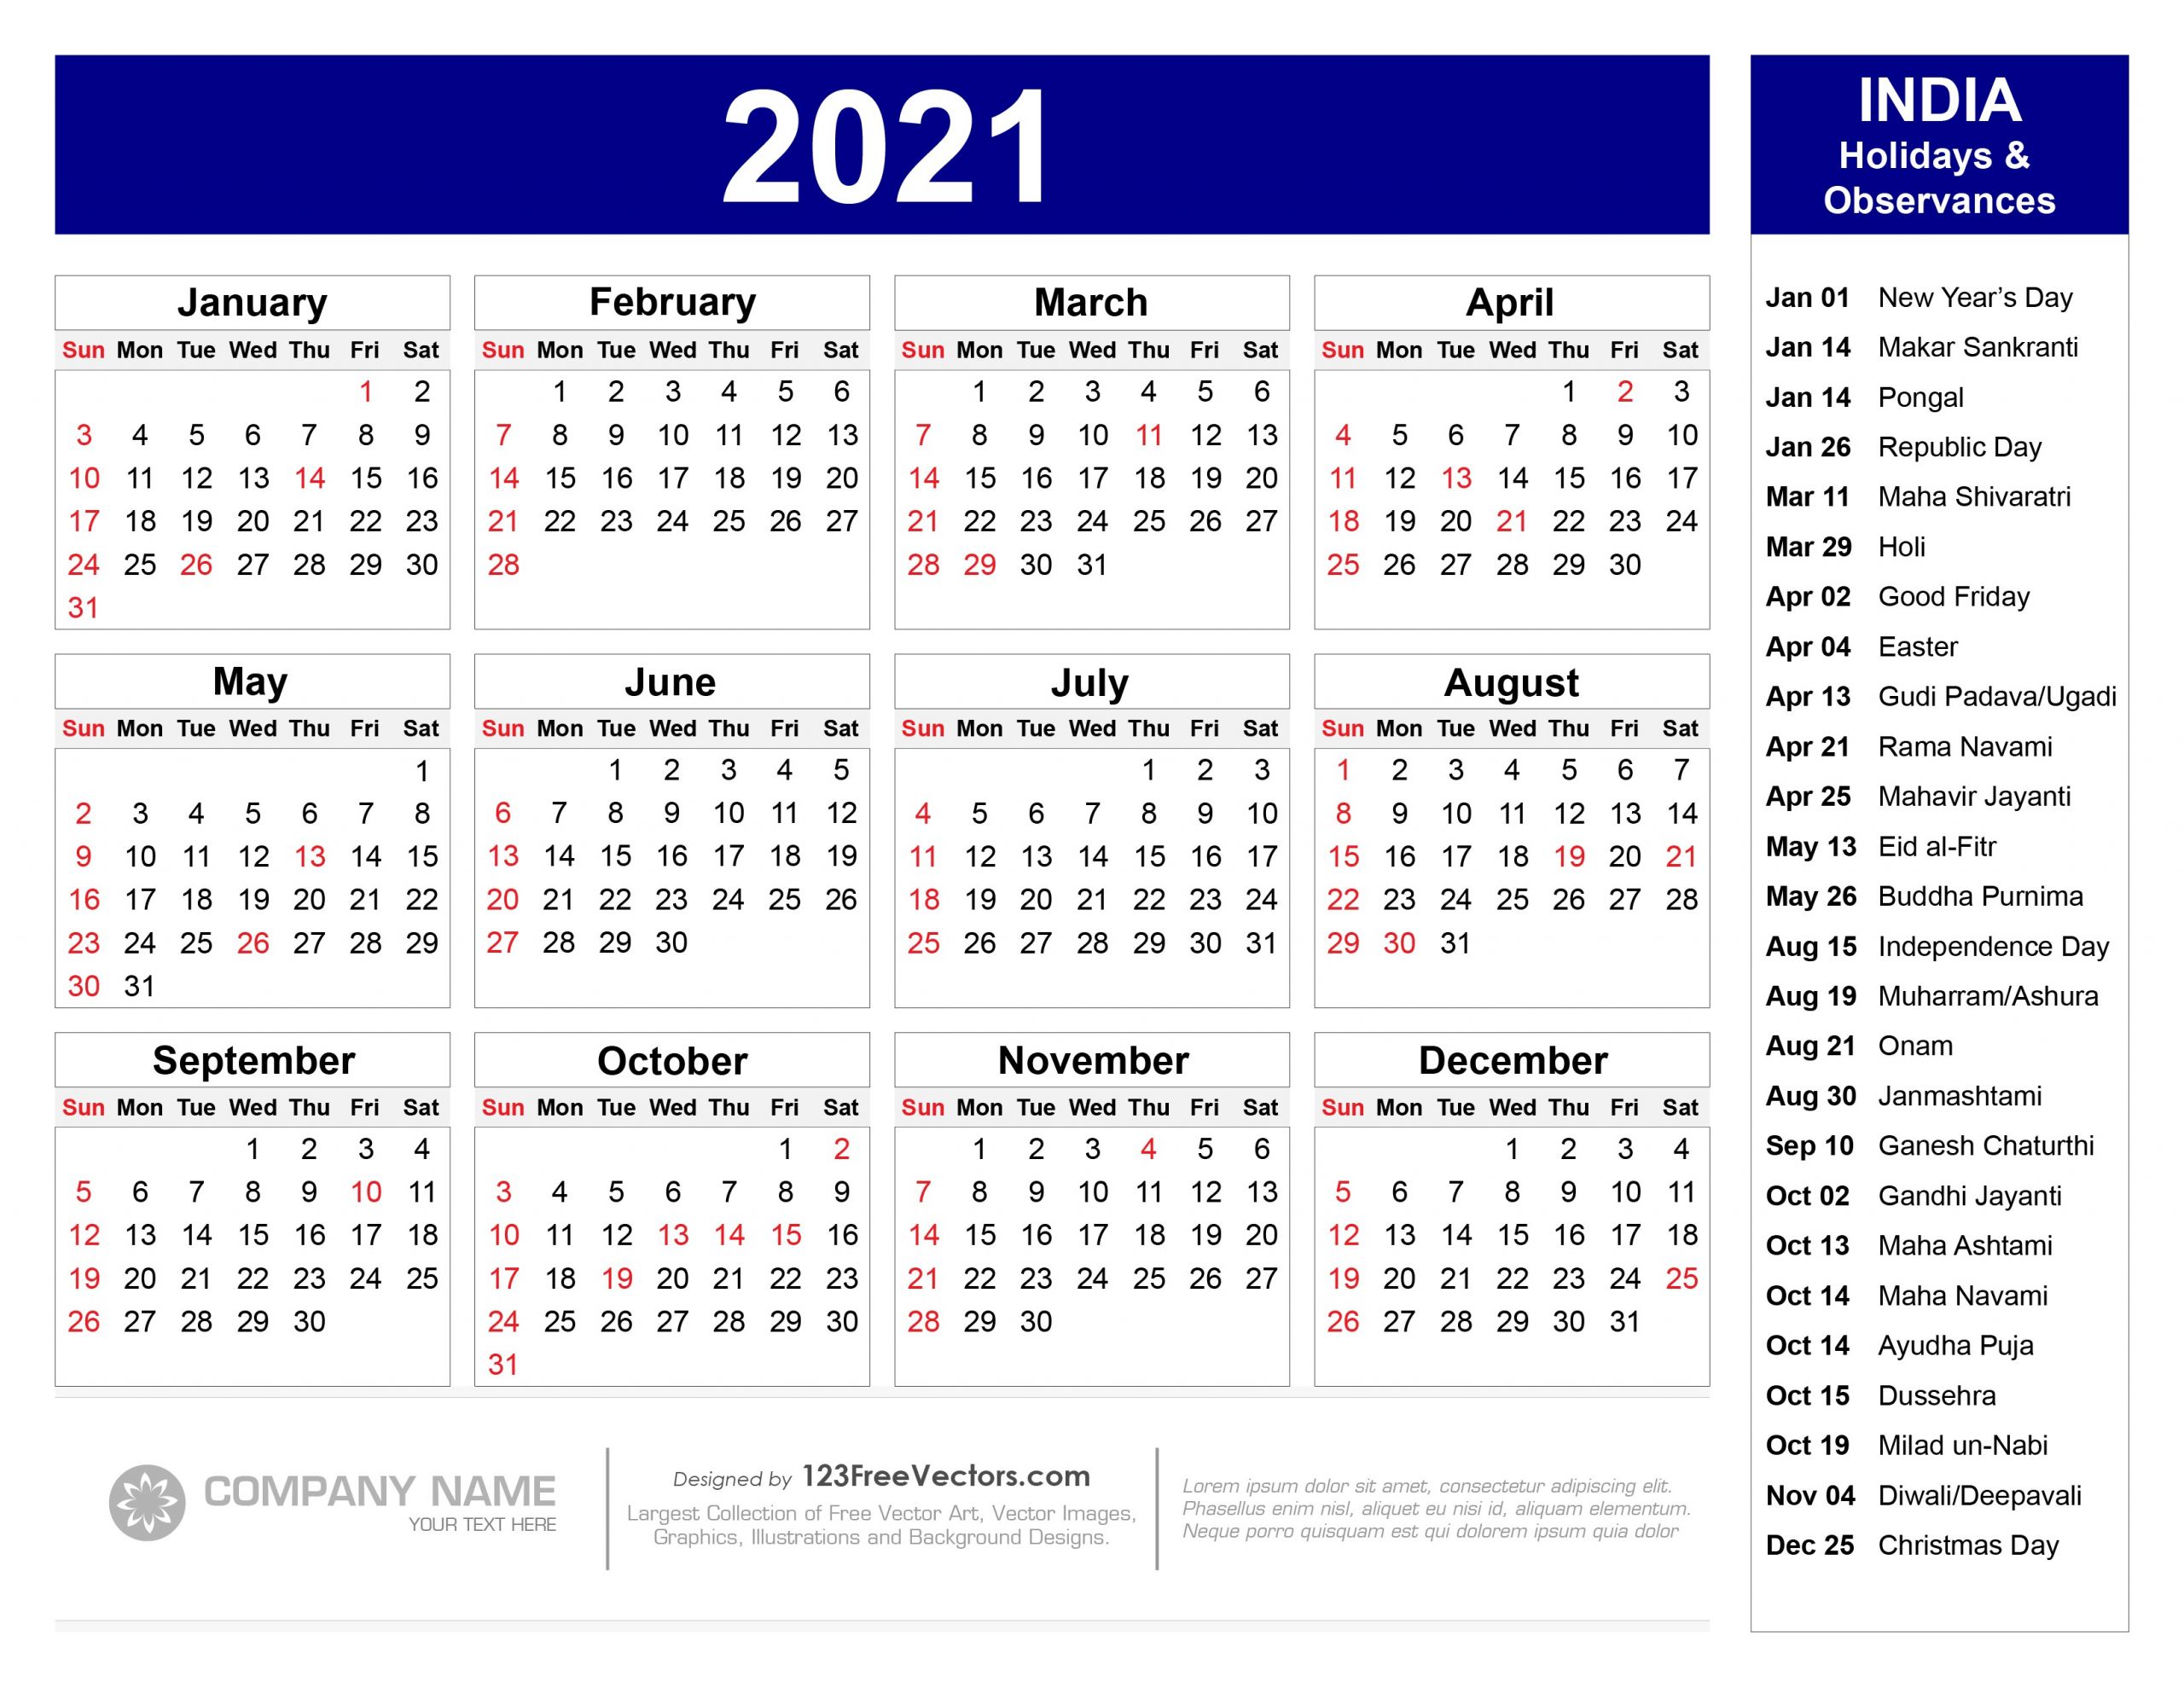 holiday calendar 2021 india april 2021